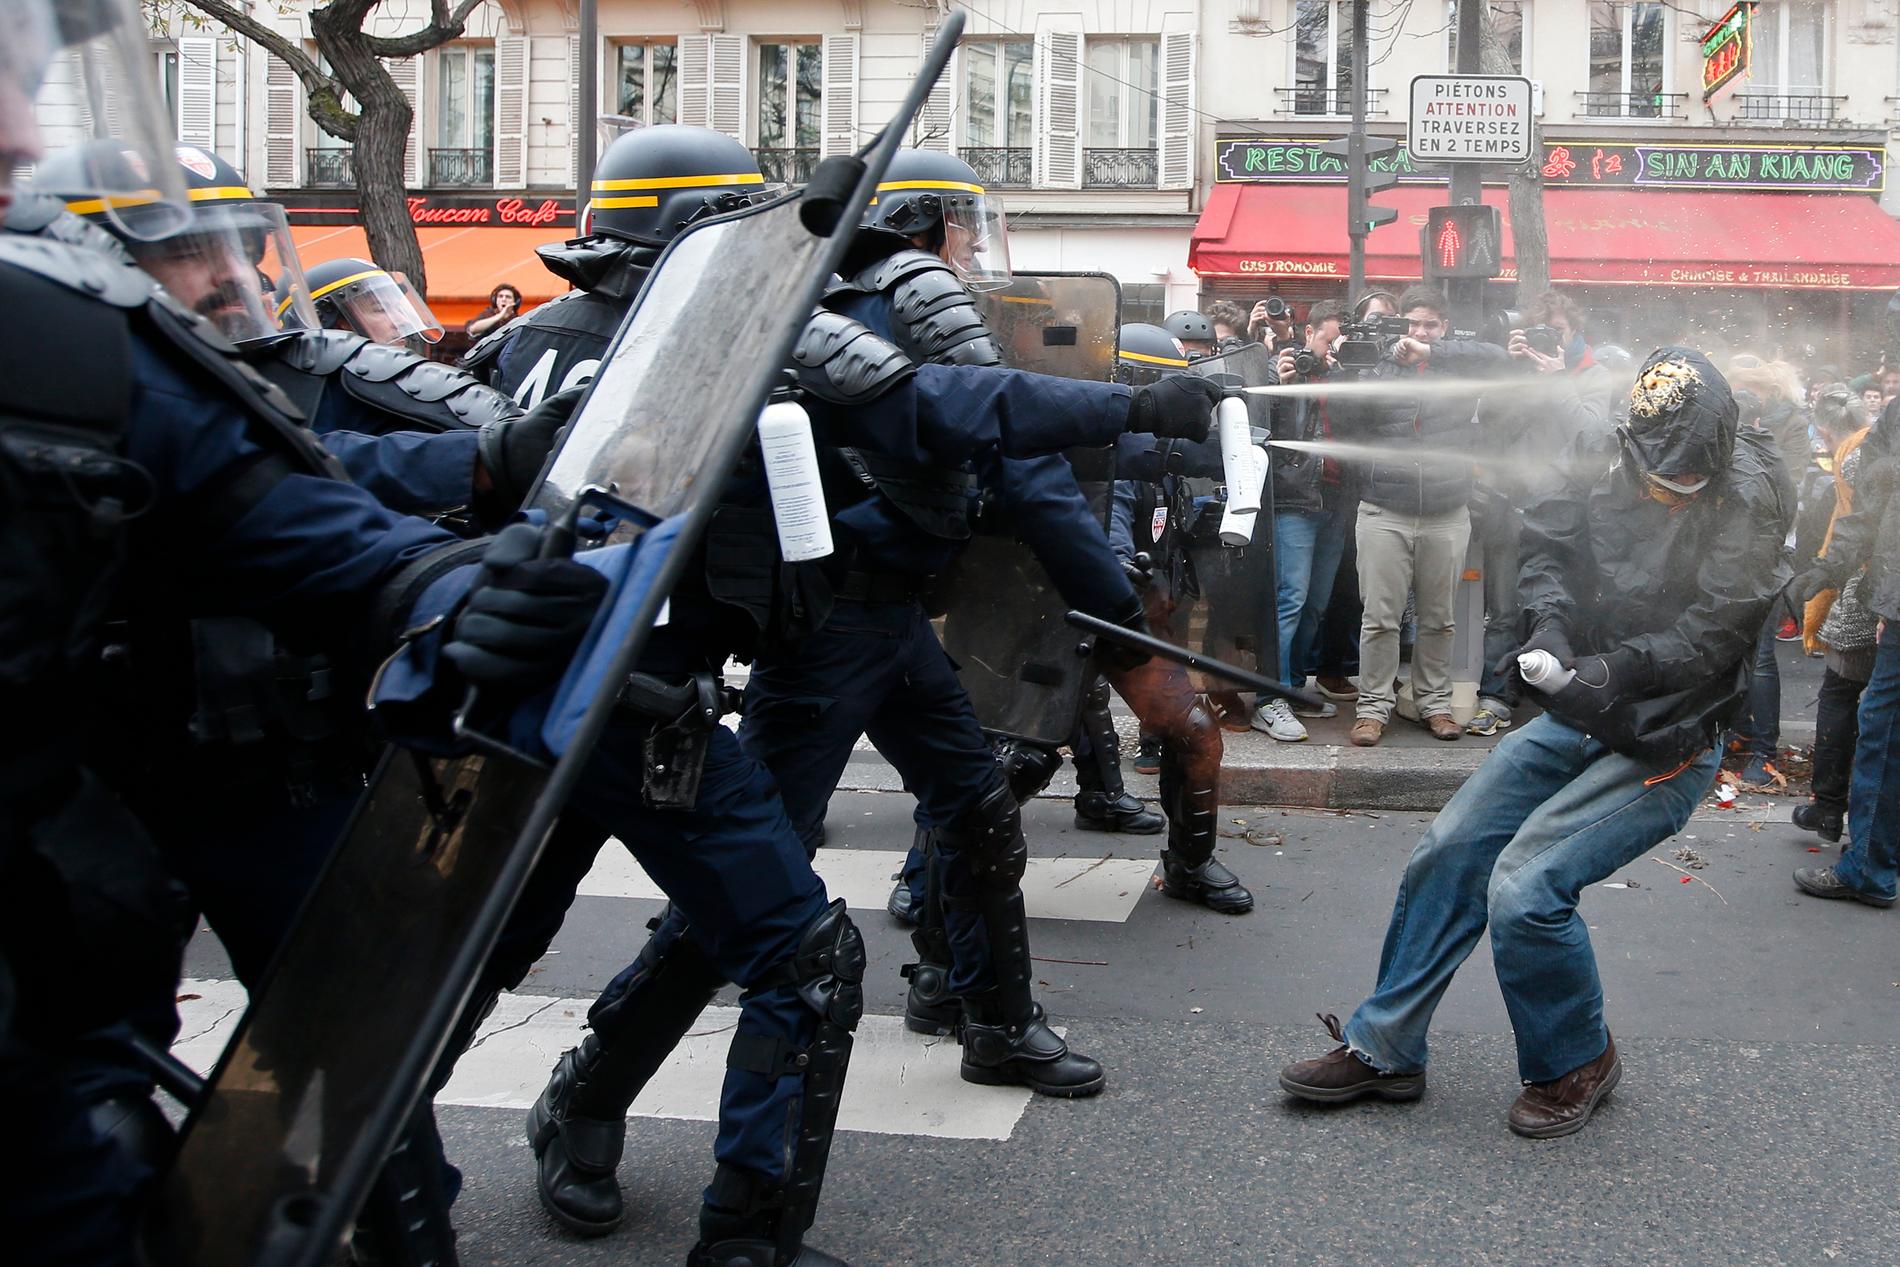 Polis har satt in tårgas mot demonstranter i Paris.